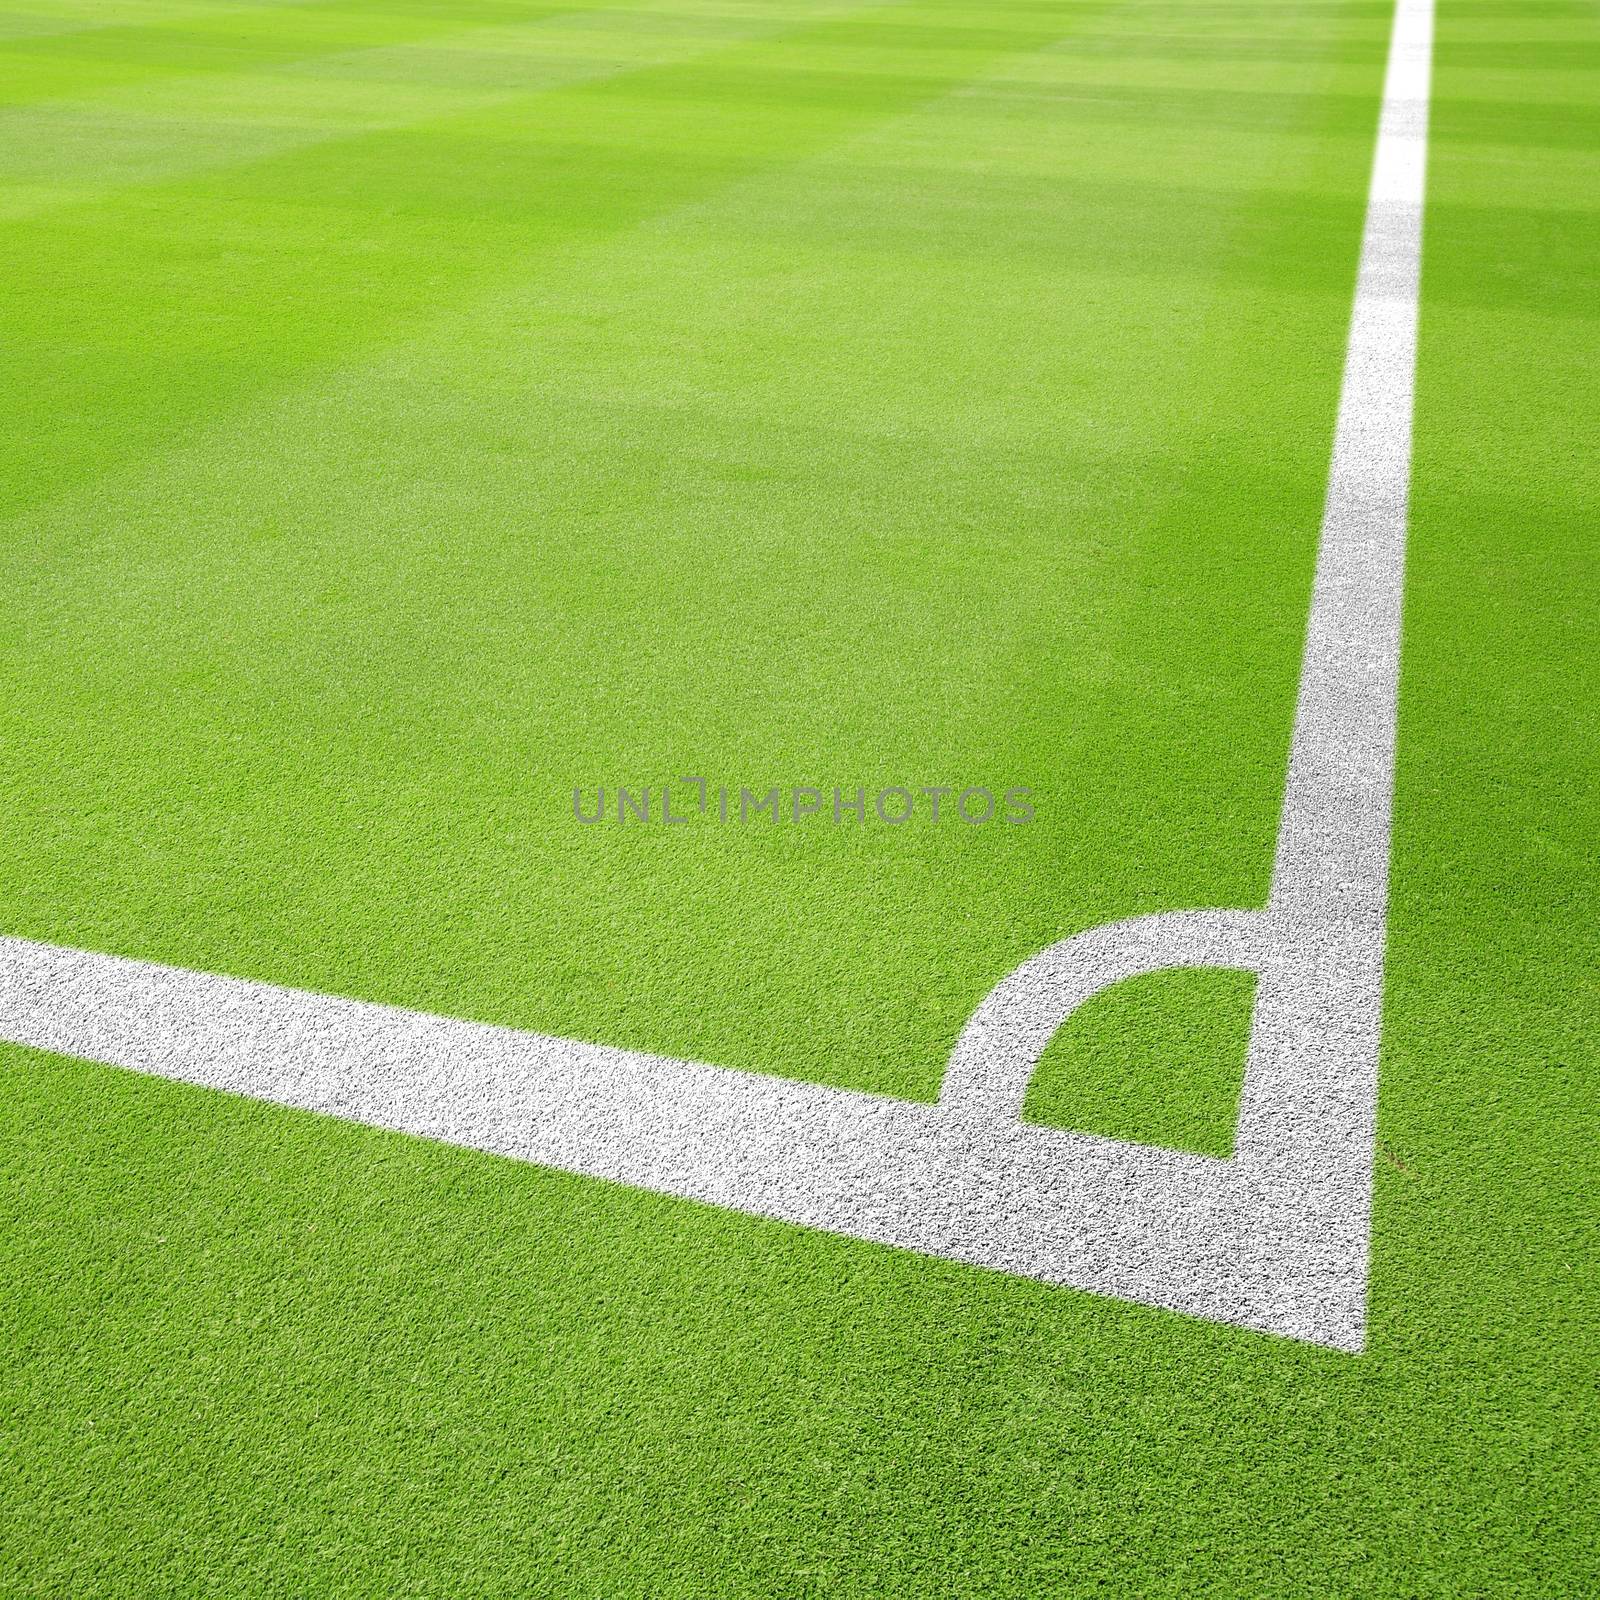 Football field corner by antpkr